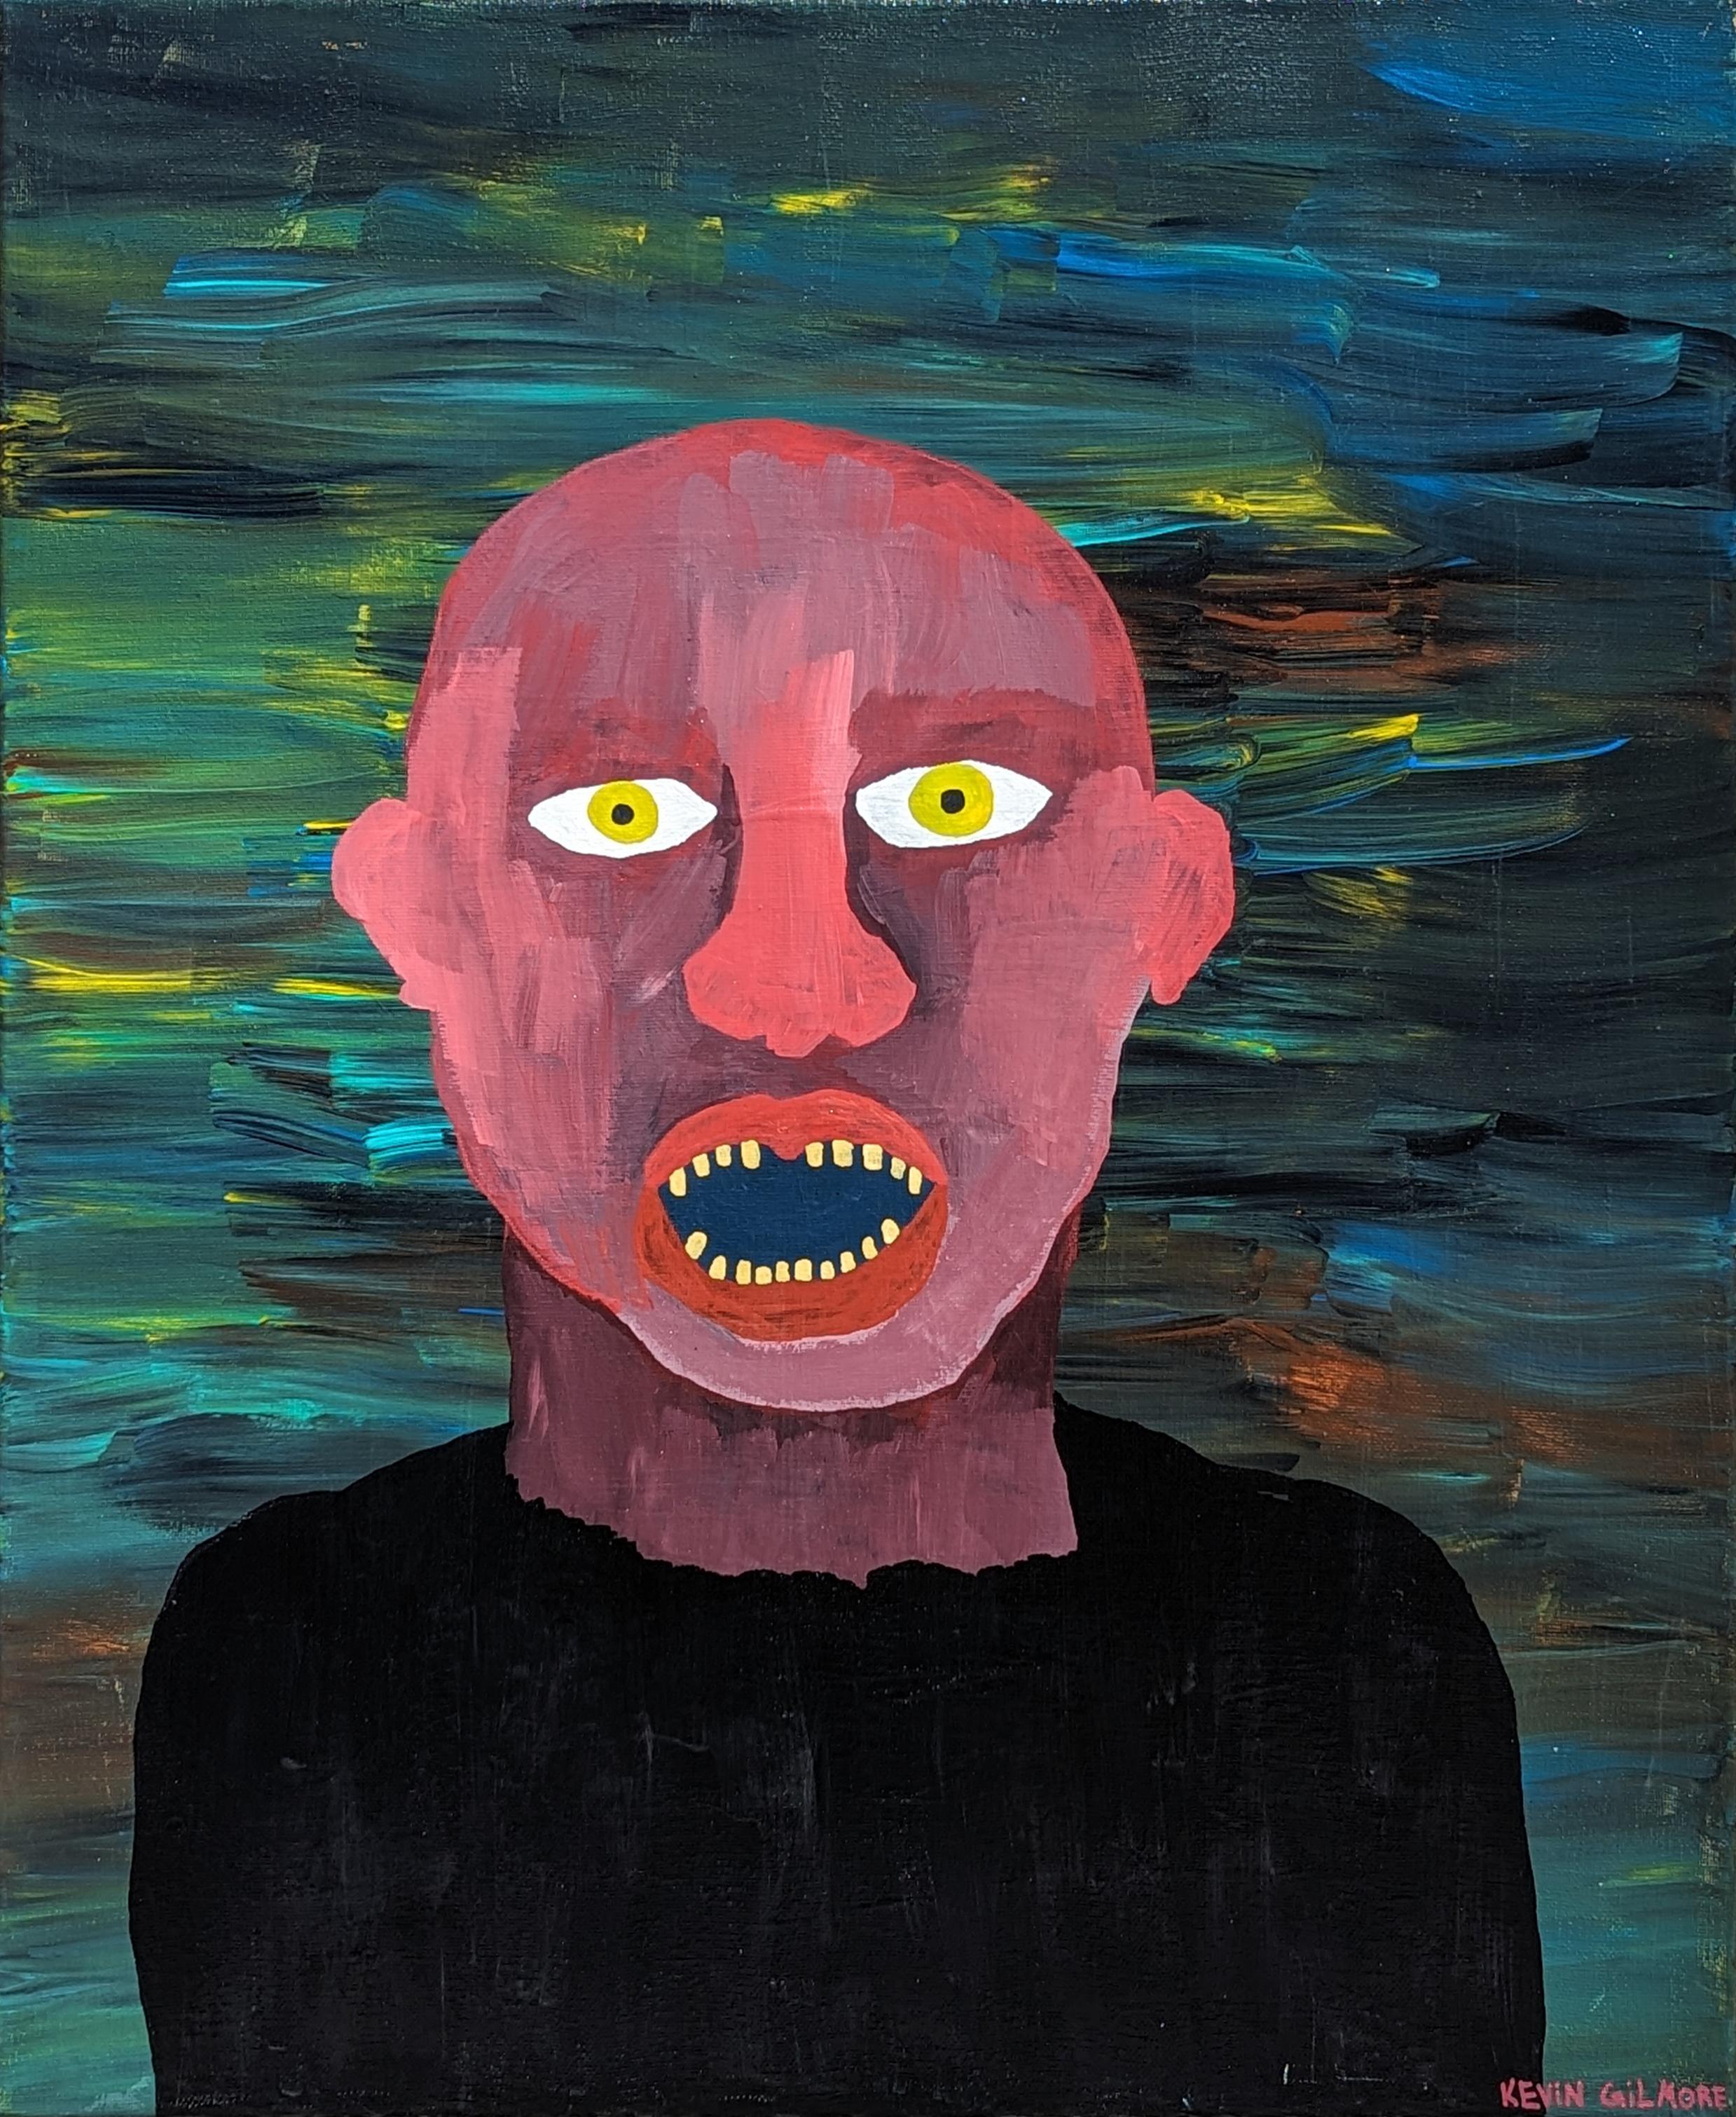 Portrait Painting Kevin Gilmore - "Homme dans l'étang" Peinture figurative contemporaine de l'extérieur en tons rouges et verts